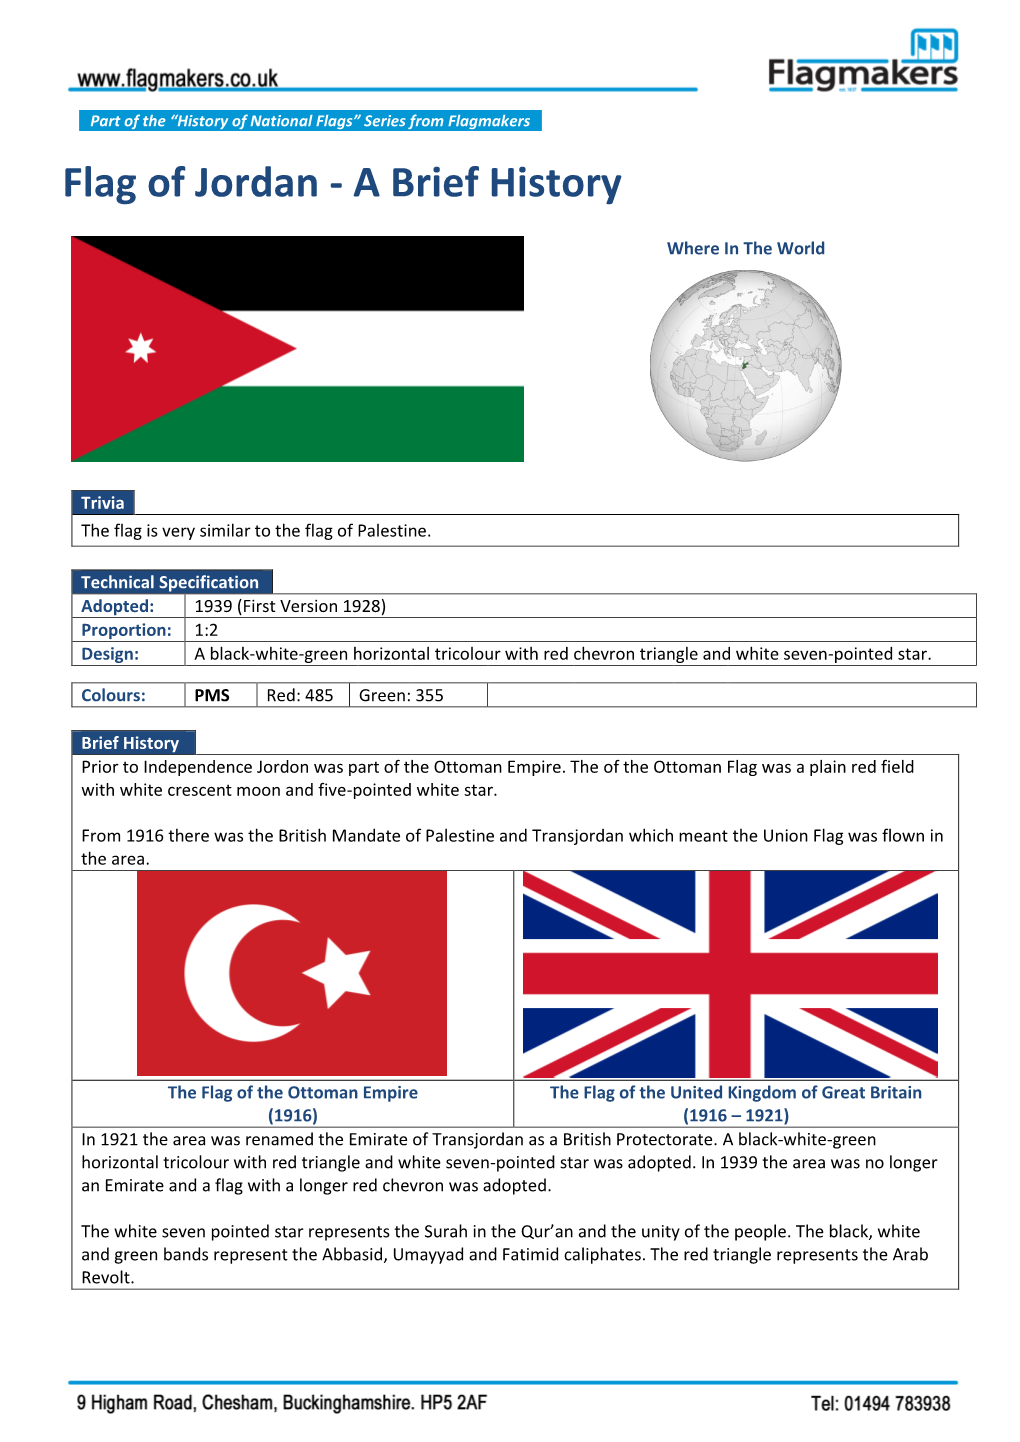 Flag of Jordan - a Brief History